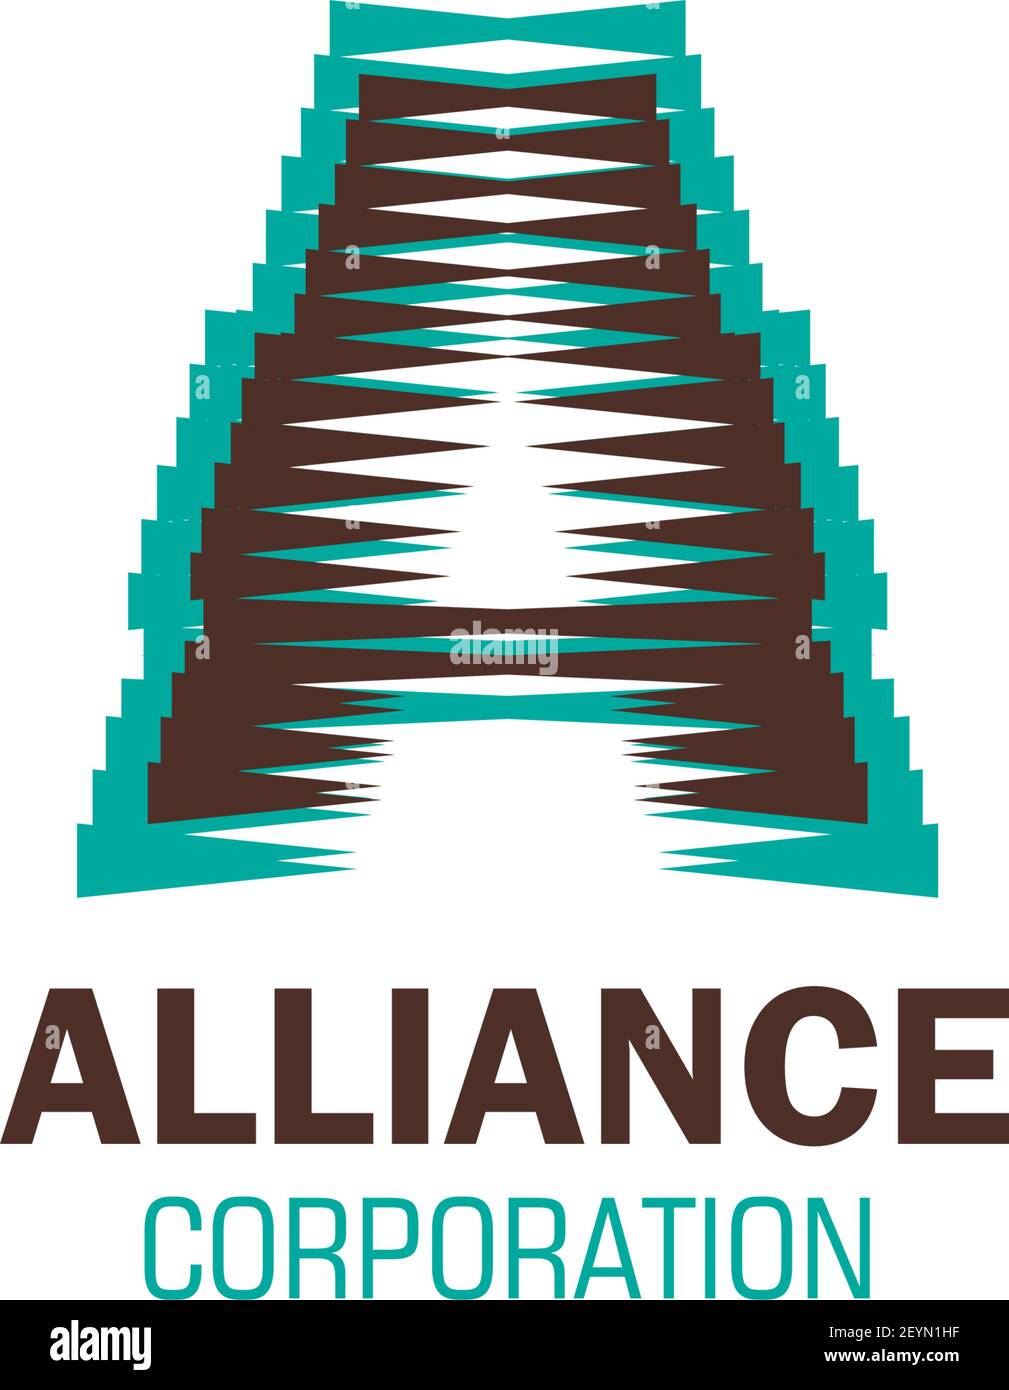 Alliance Corporation Vektor-Symbol auf weißem Hintergrund isoliert. Konzept der Partnerschaft und Teamarbeit, Unterstützung des Geschäfts. Vereinigung, Einheit oder allia Stock Vektor